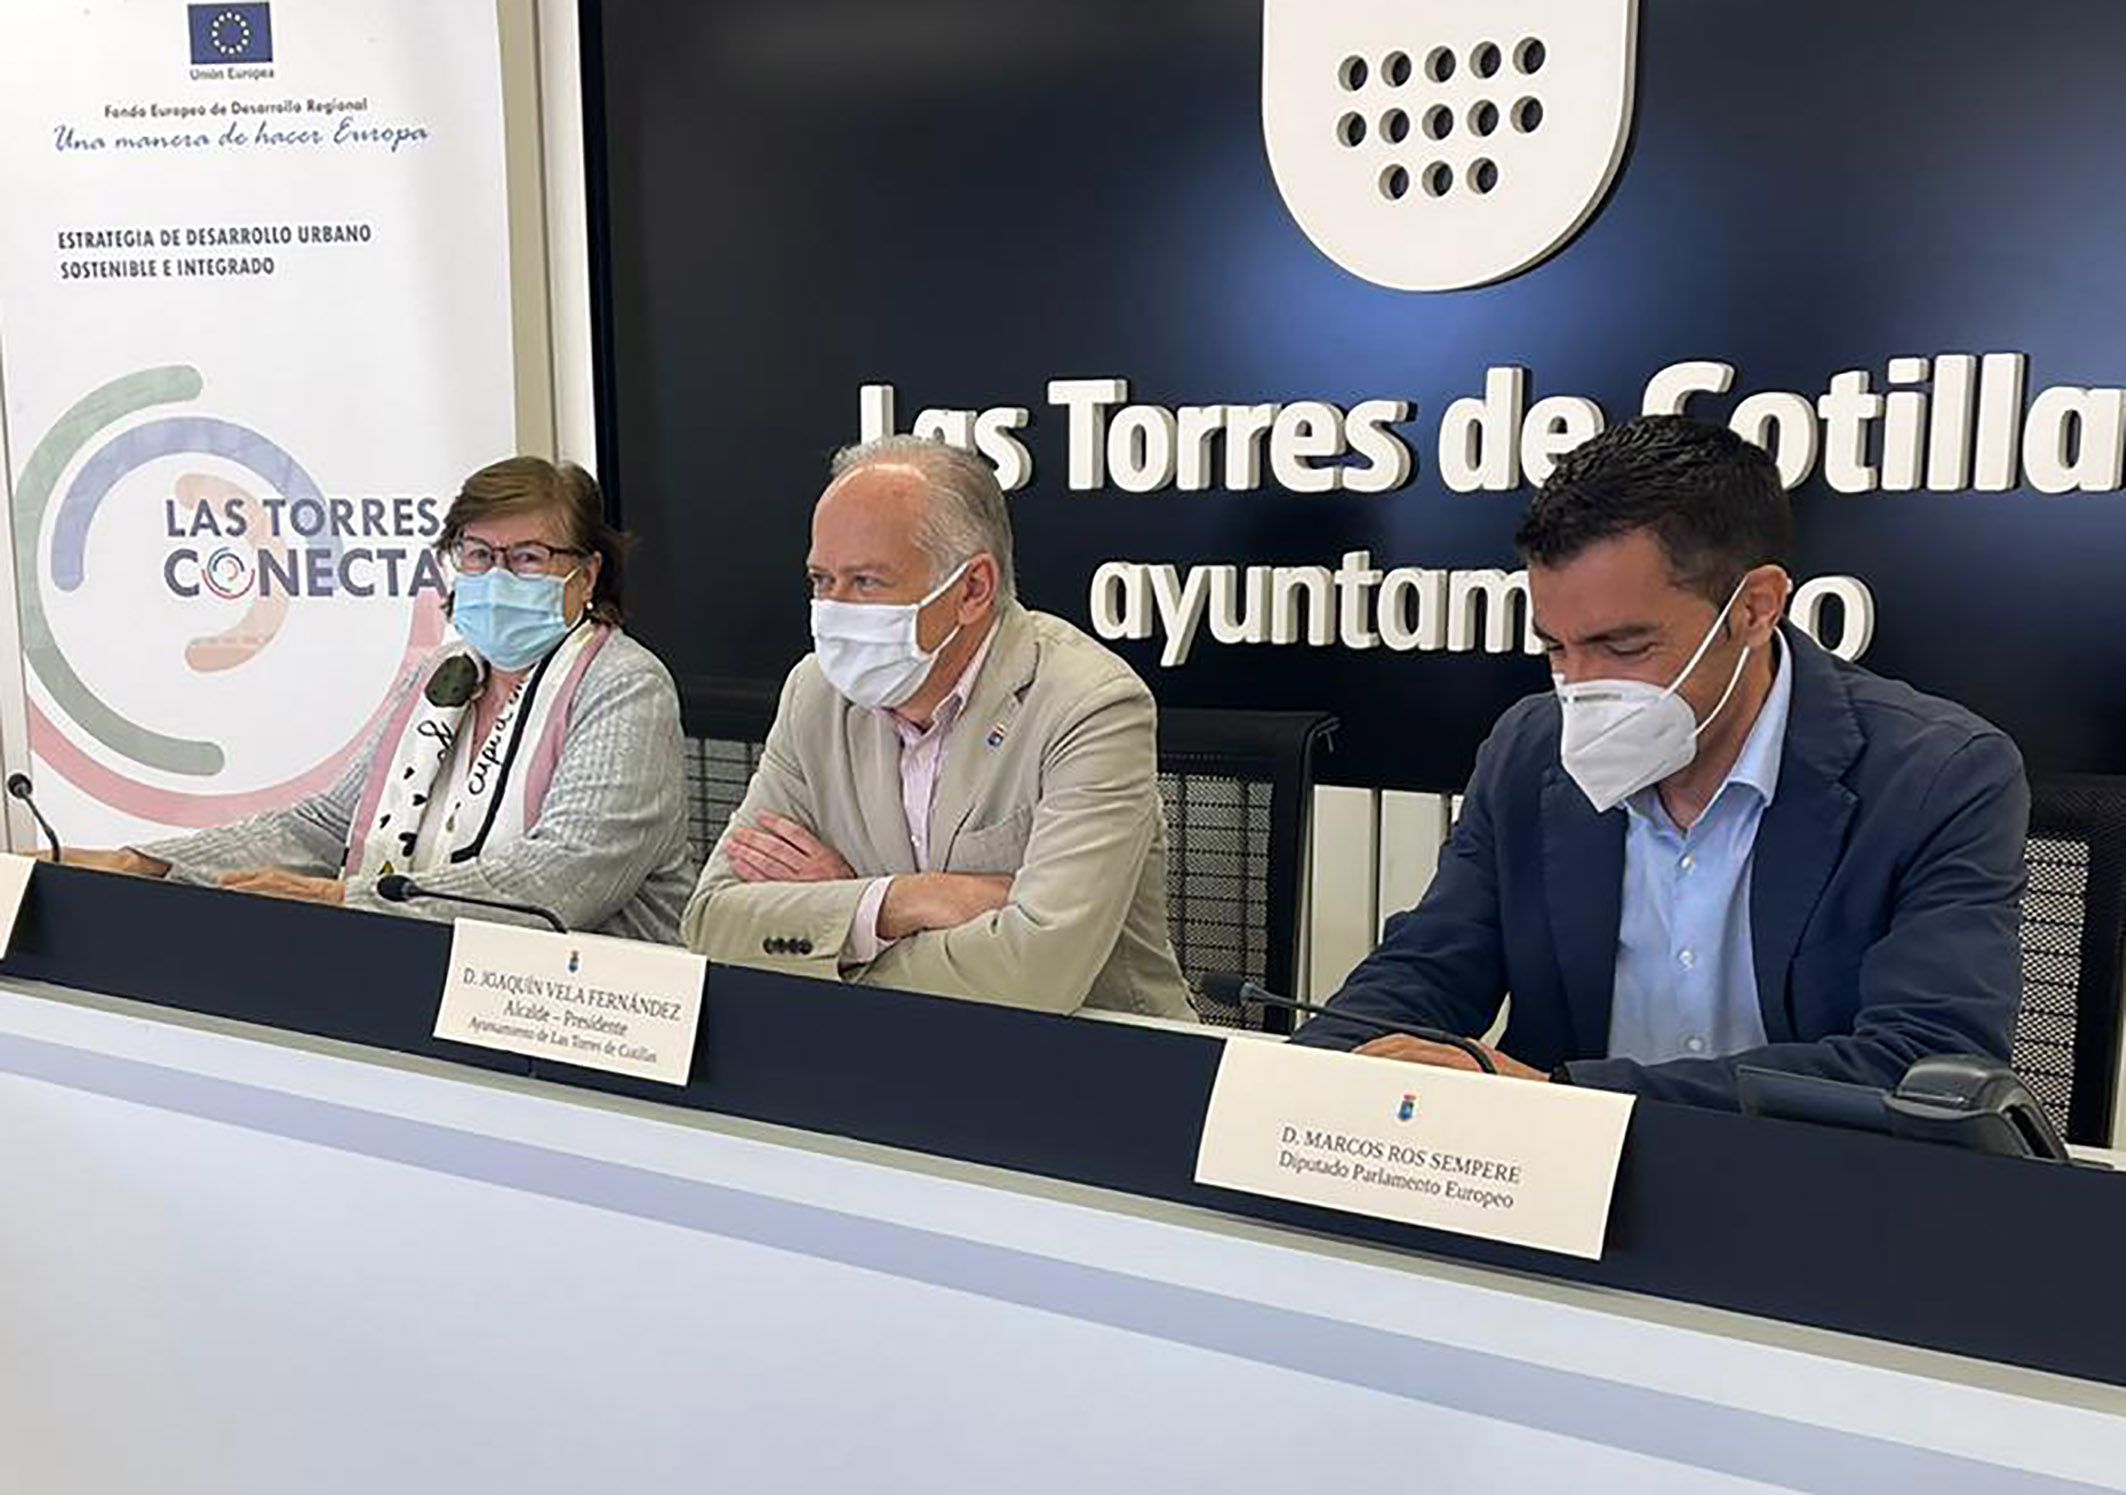 El eurodiputado Marcos Ros se interesa por la EDUSI “Las Torres Conecta” que cuenta con 5 millones de fondos FEDER3